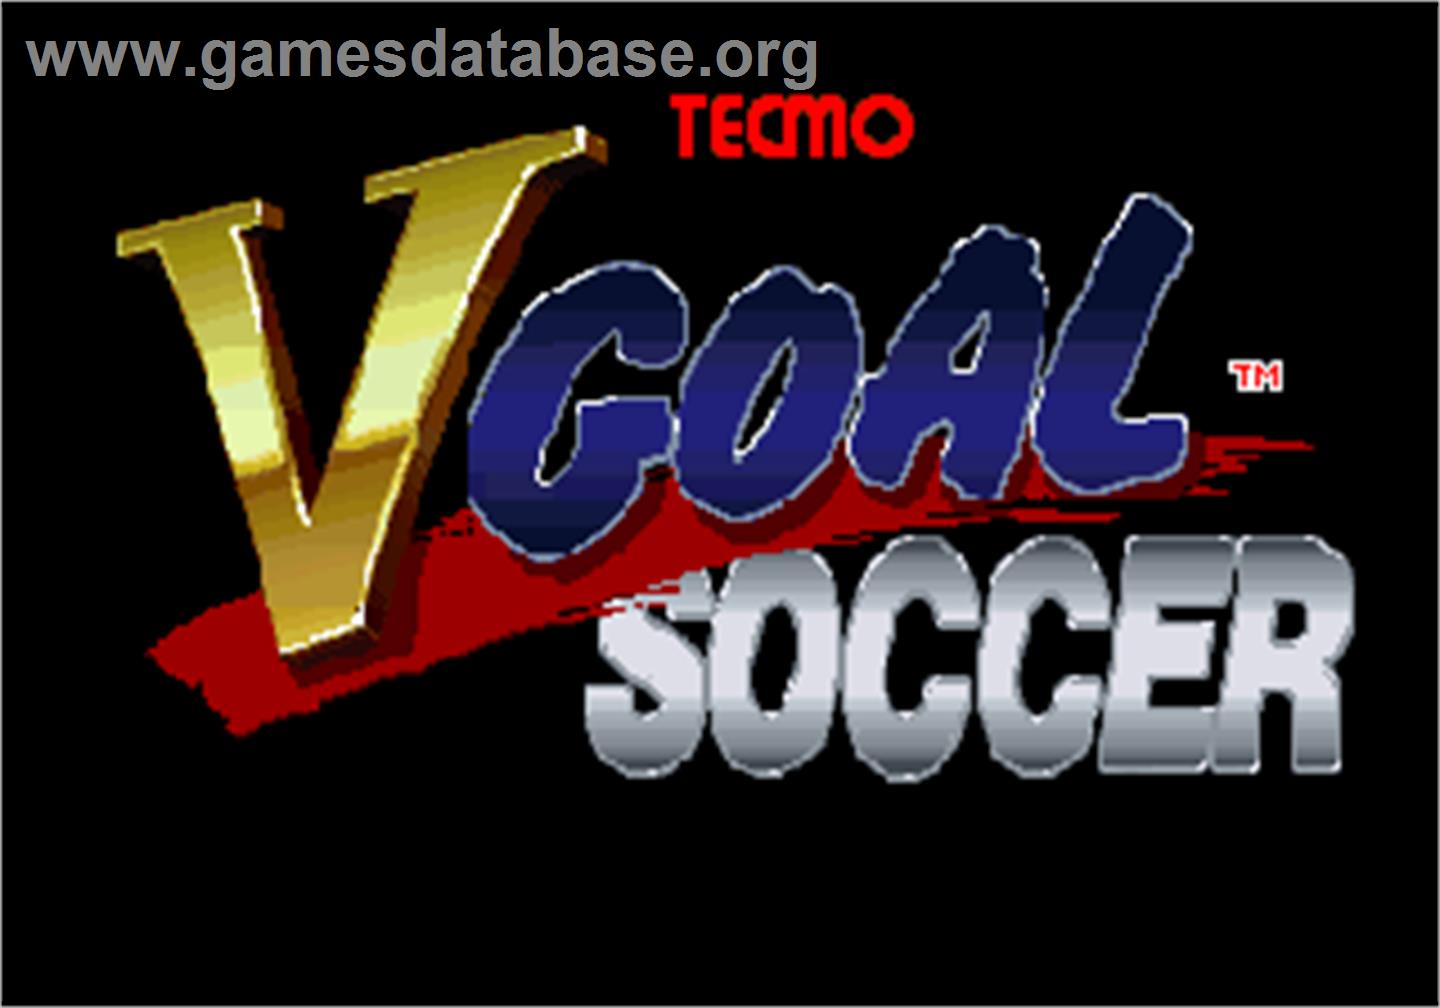 V Goal Soccer - Arcade - Artwork - Title Screen